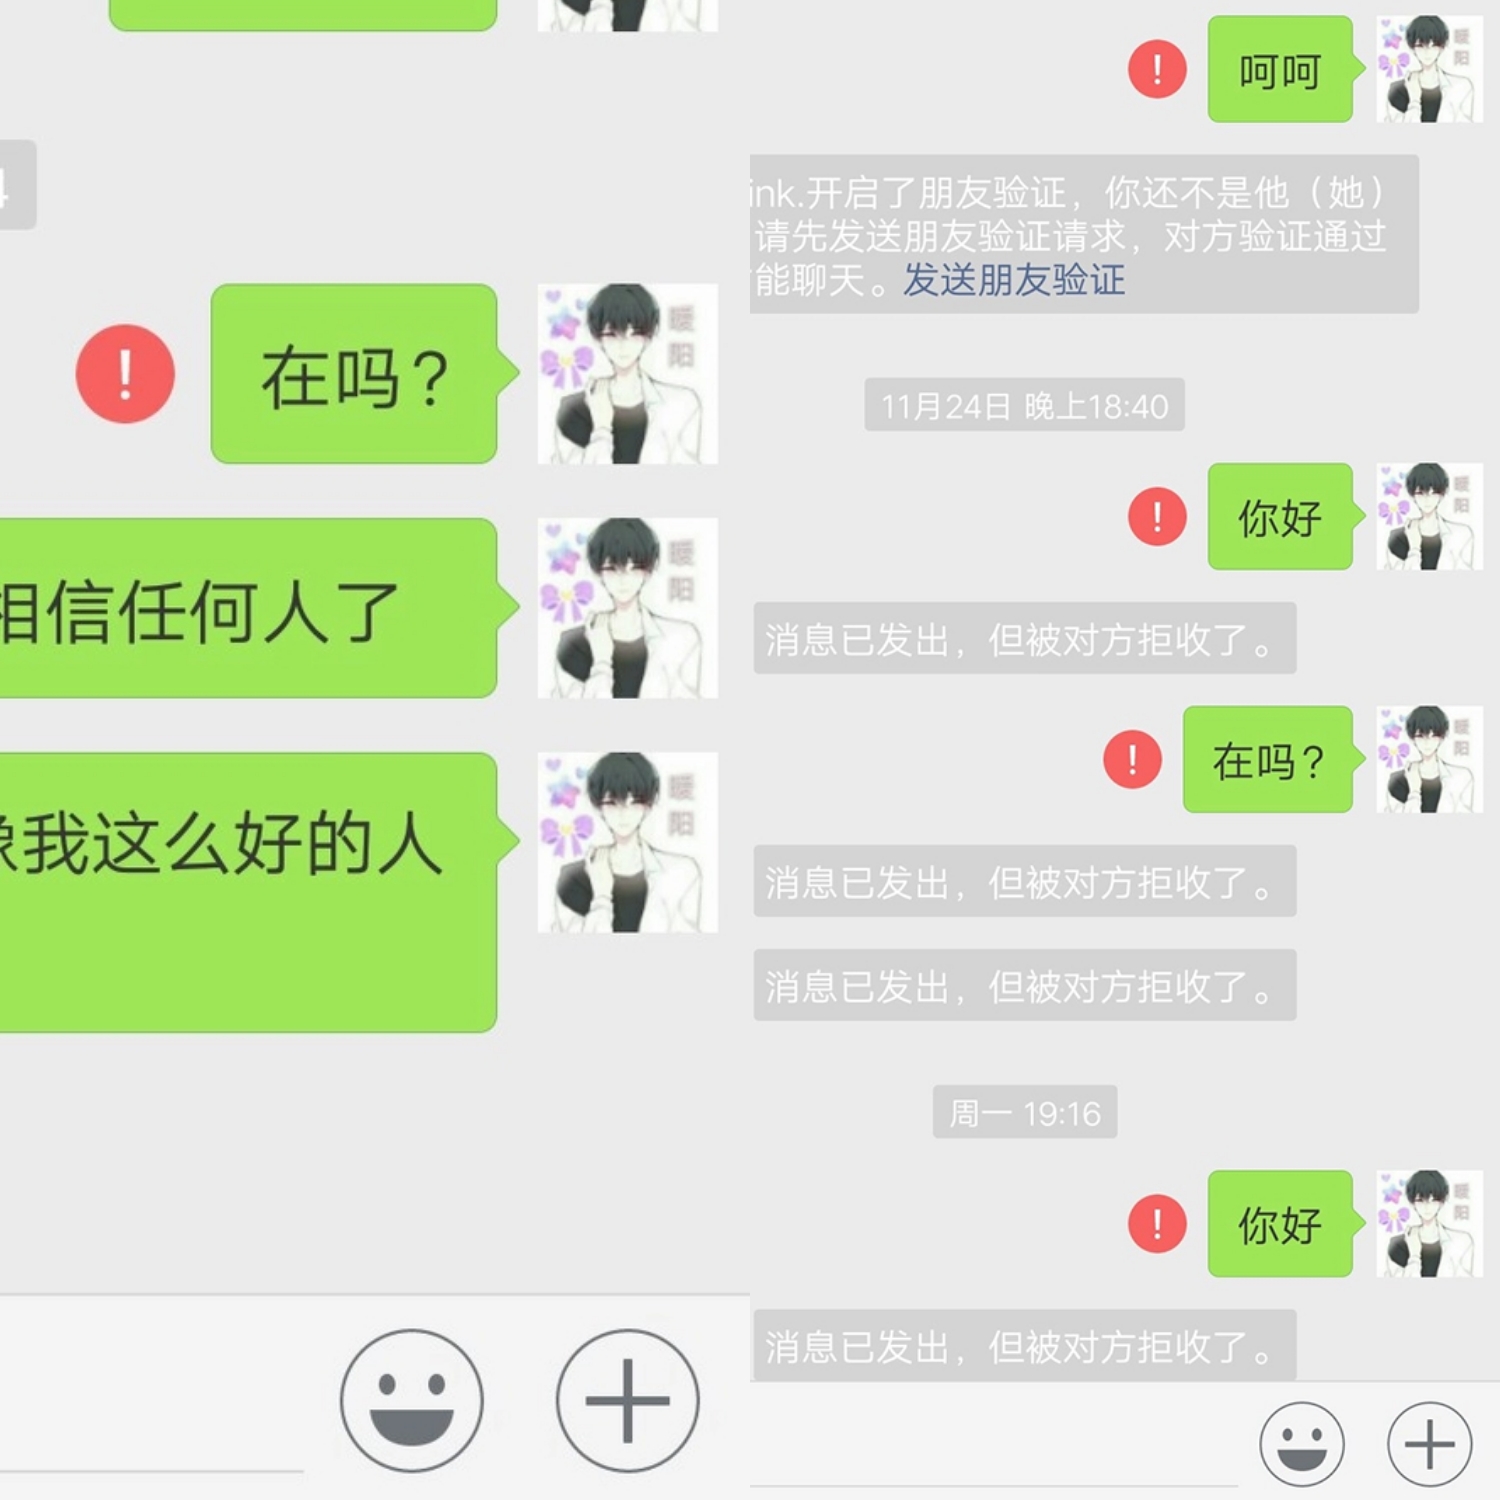 王者荣耀:土豪组cp网恋被骗千元,屡教不改,网友评论